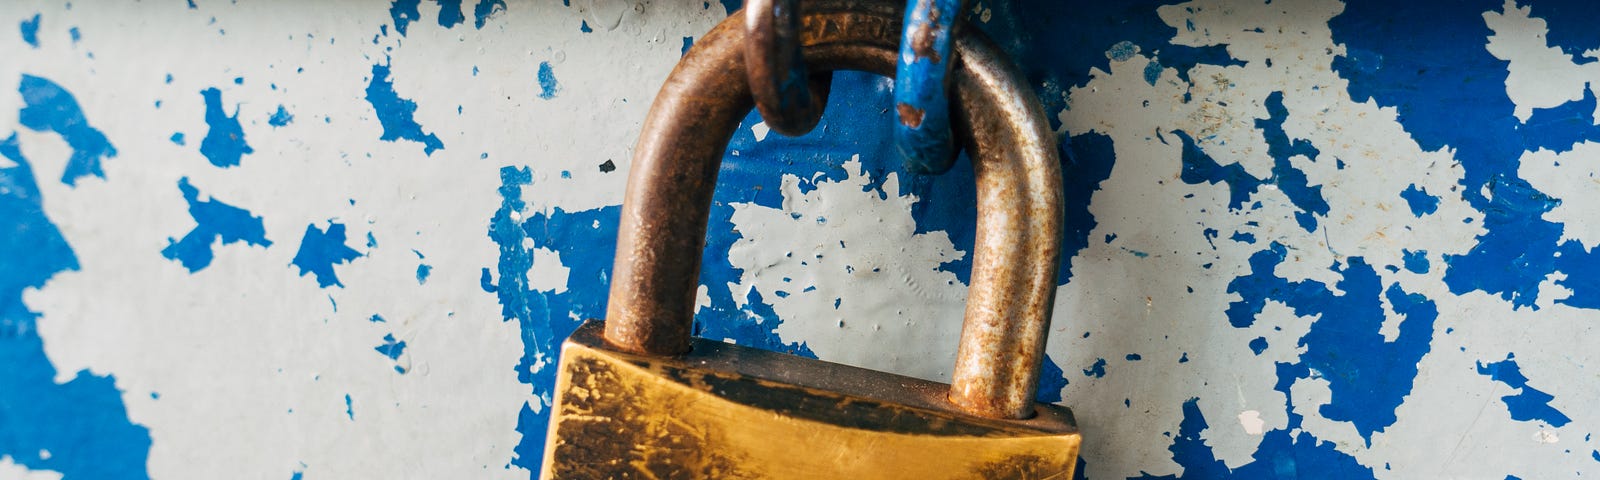 Photo of a lock symbolizing freedom